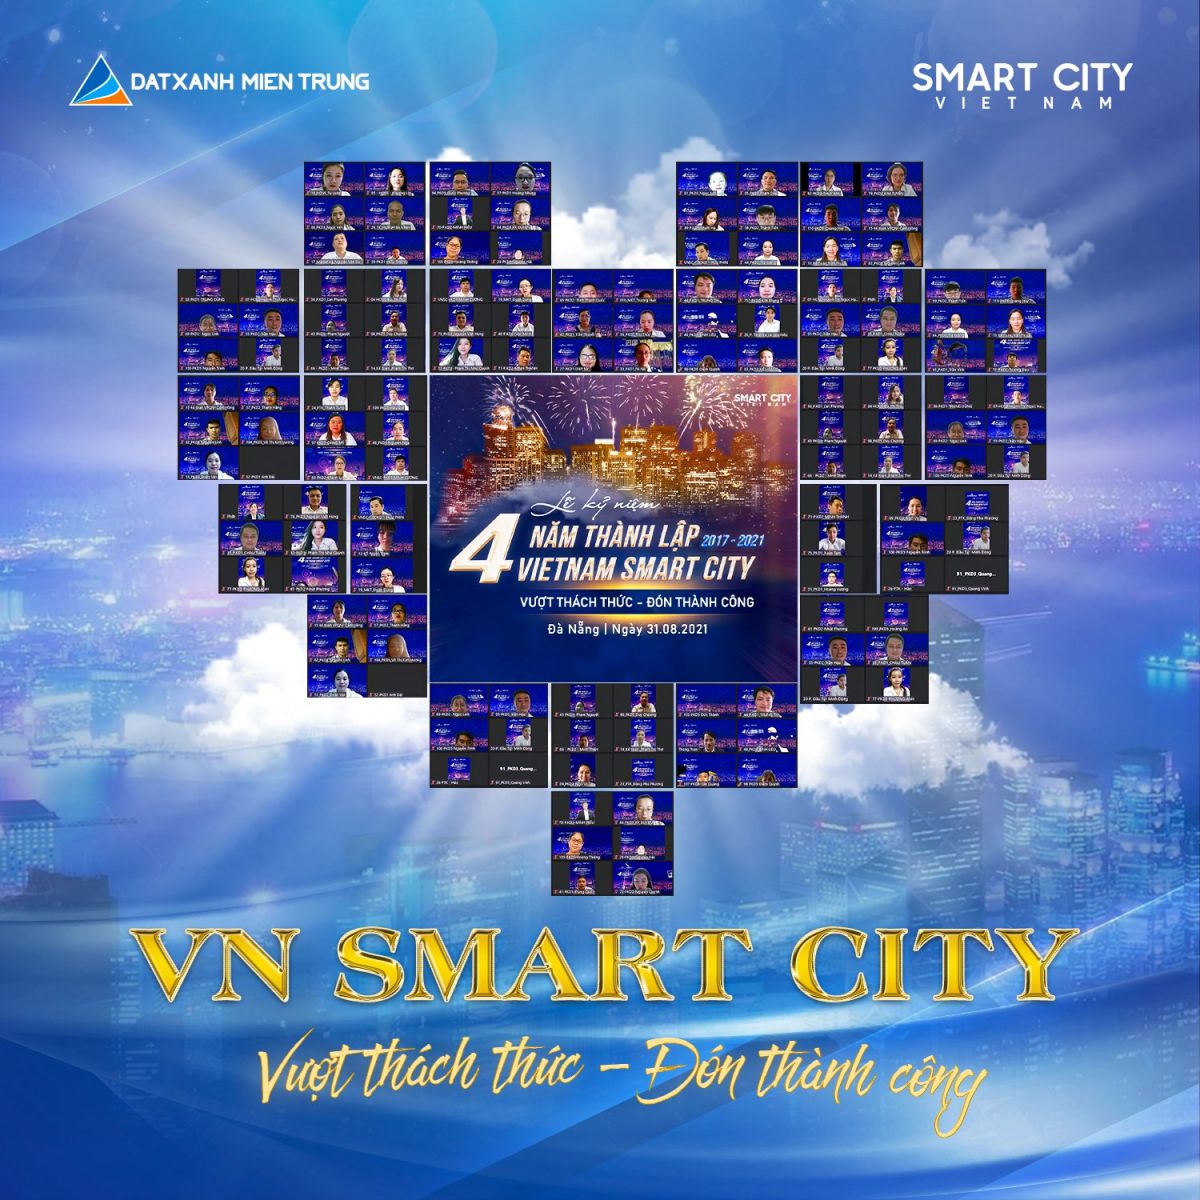 LỄ KỶ NIỆM BỐN NĂM THÀNH LẬP VN SMART CITY - Viet Nam Smart City